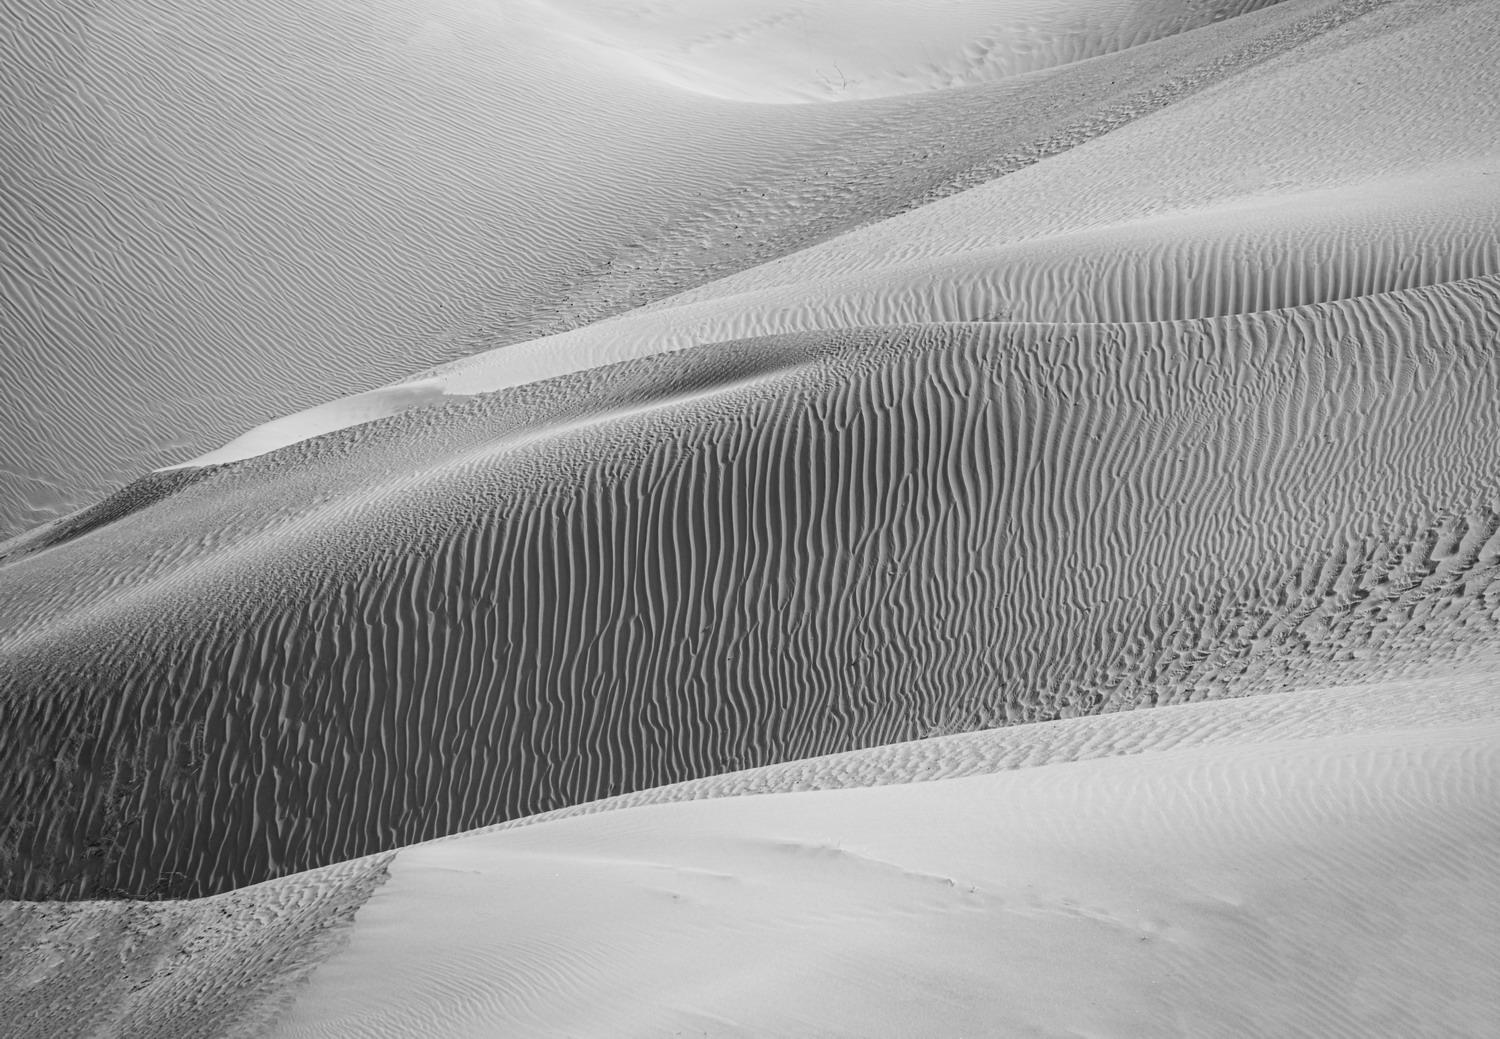 DSC_7694_1A2 - Sand Dunes (Hunder)